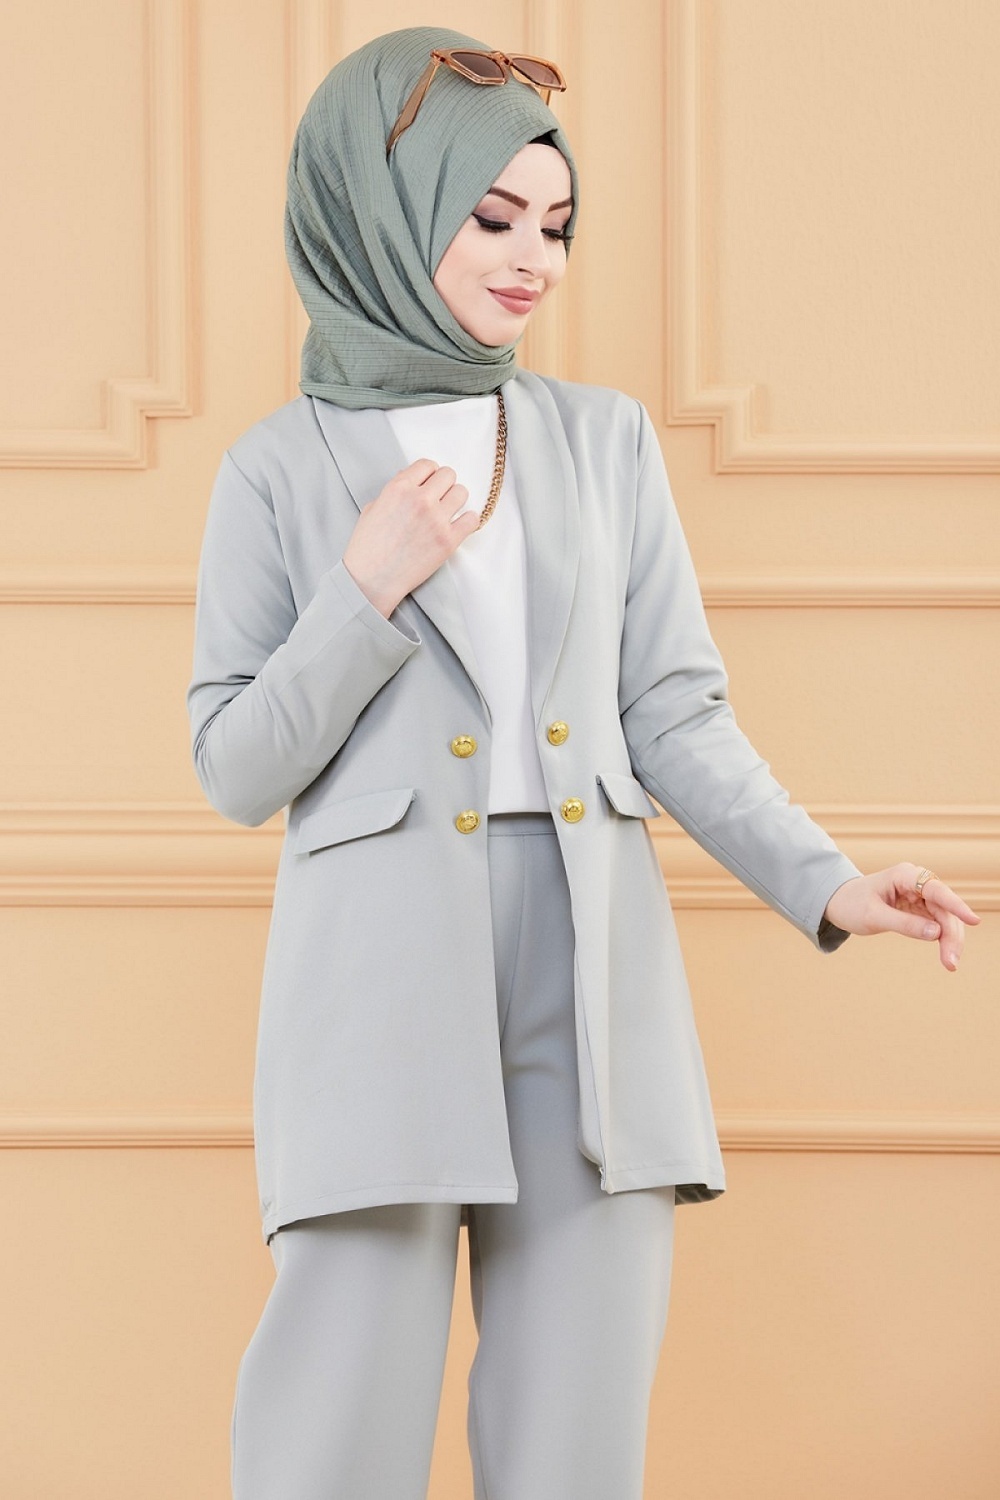 Pantalon femme classique et casual (Boutique hijab en ligne) - Couleur beige